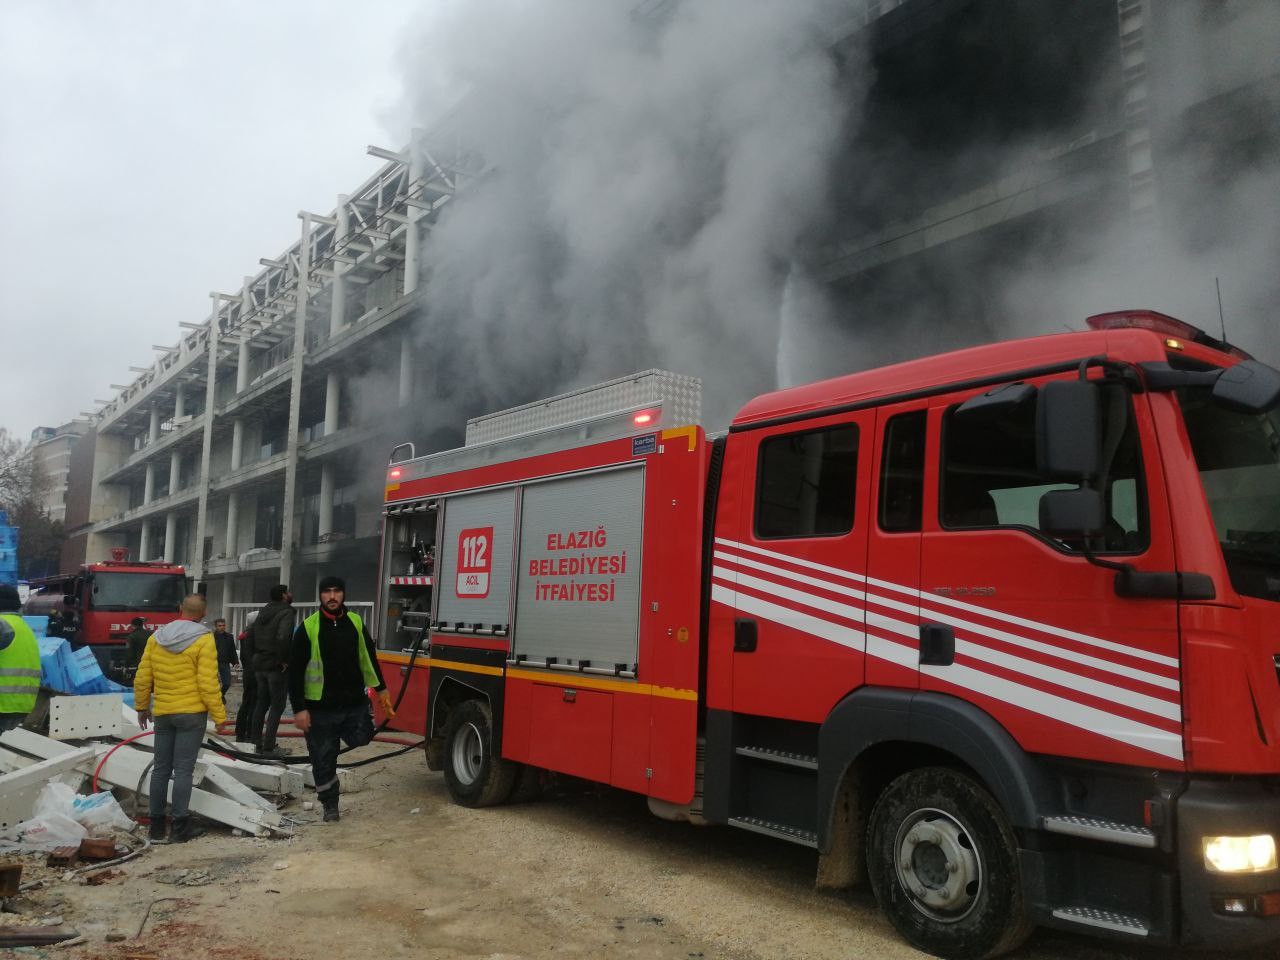 Elazığ’da stadyumdaki yangın söndürüldü #elazig